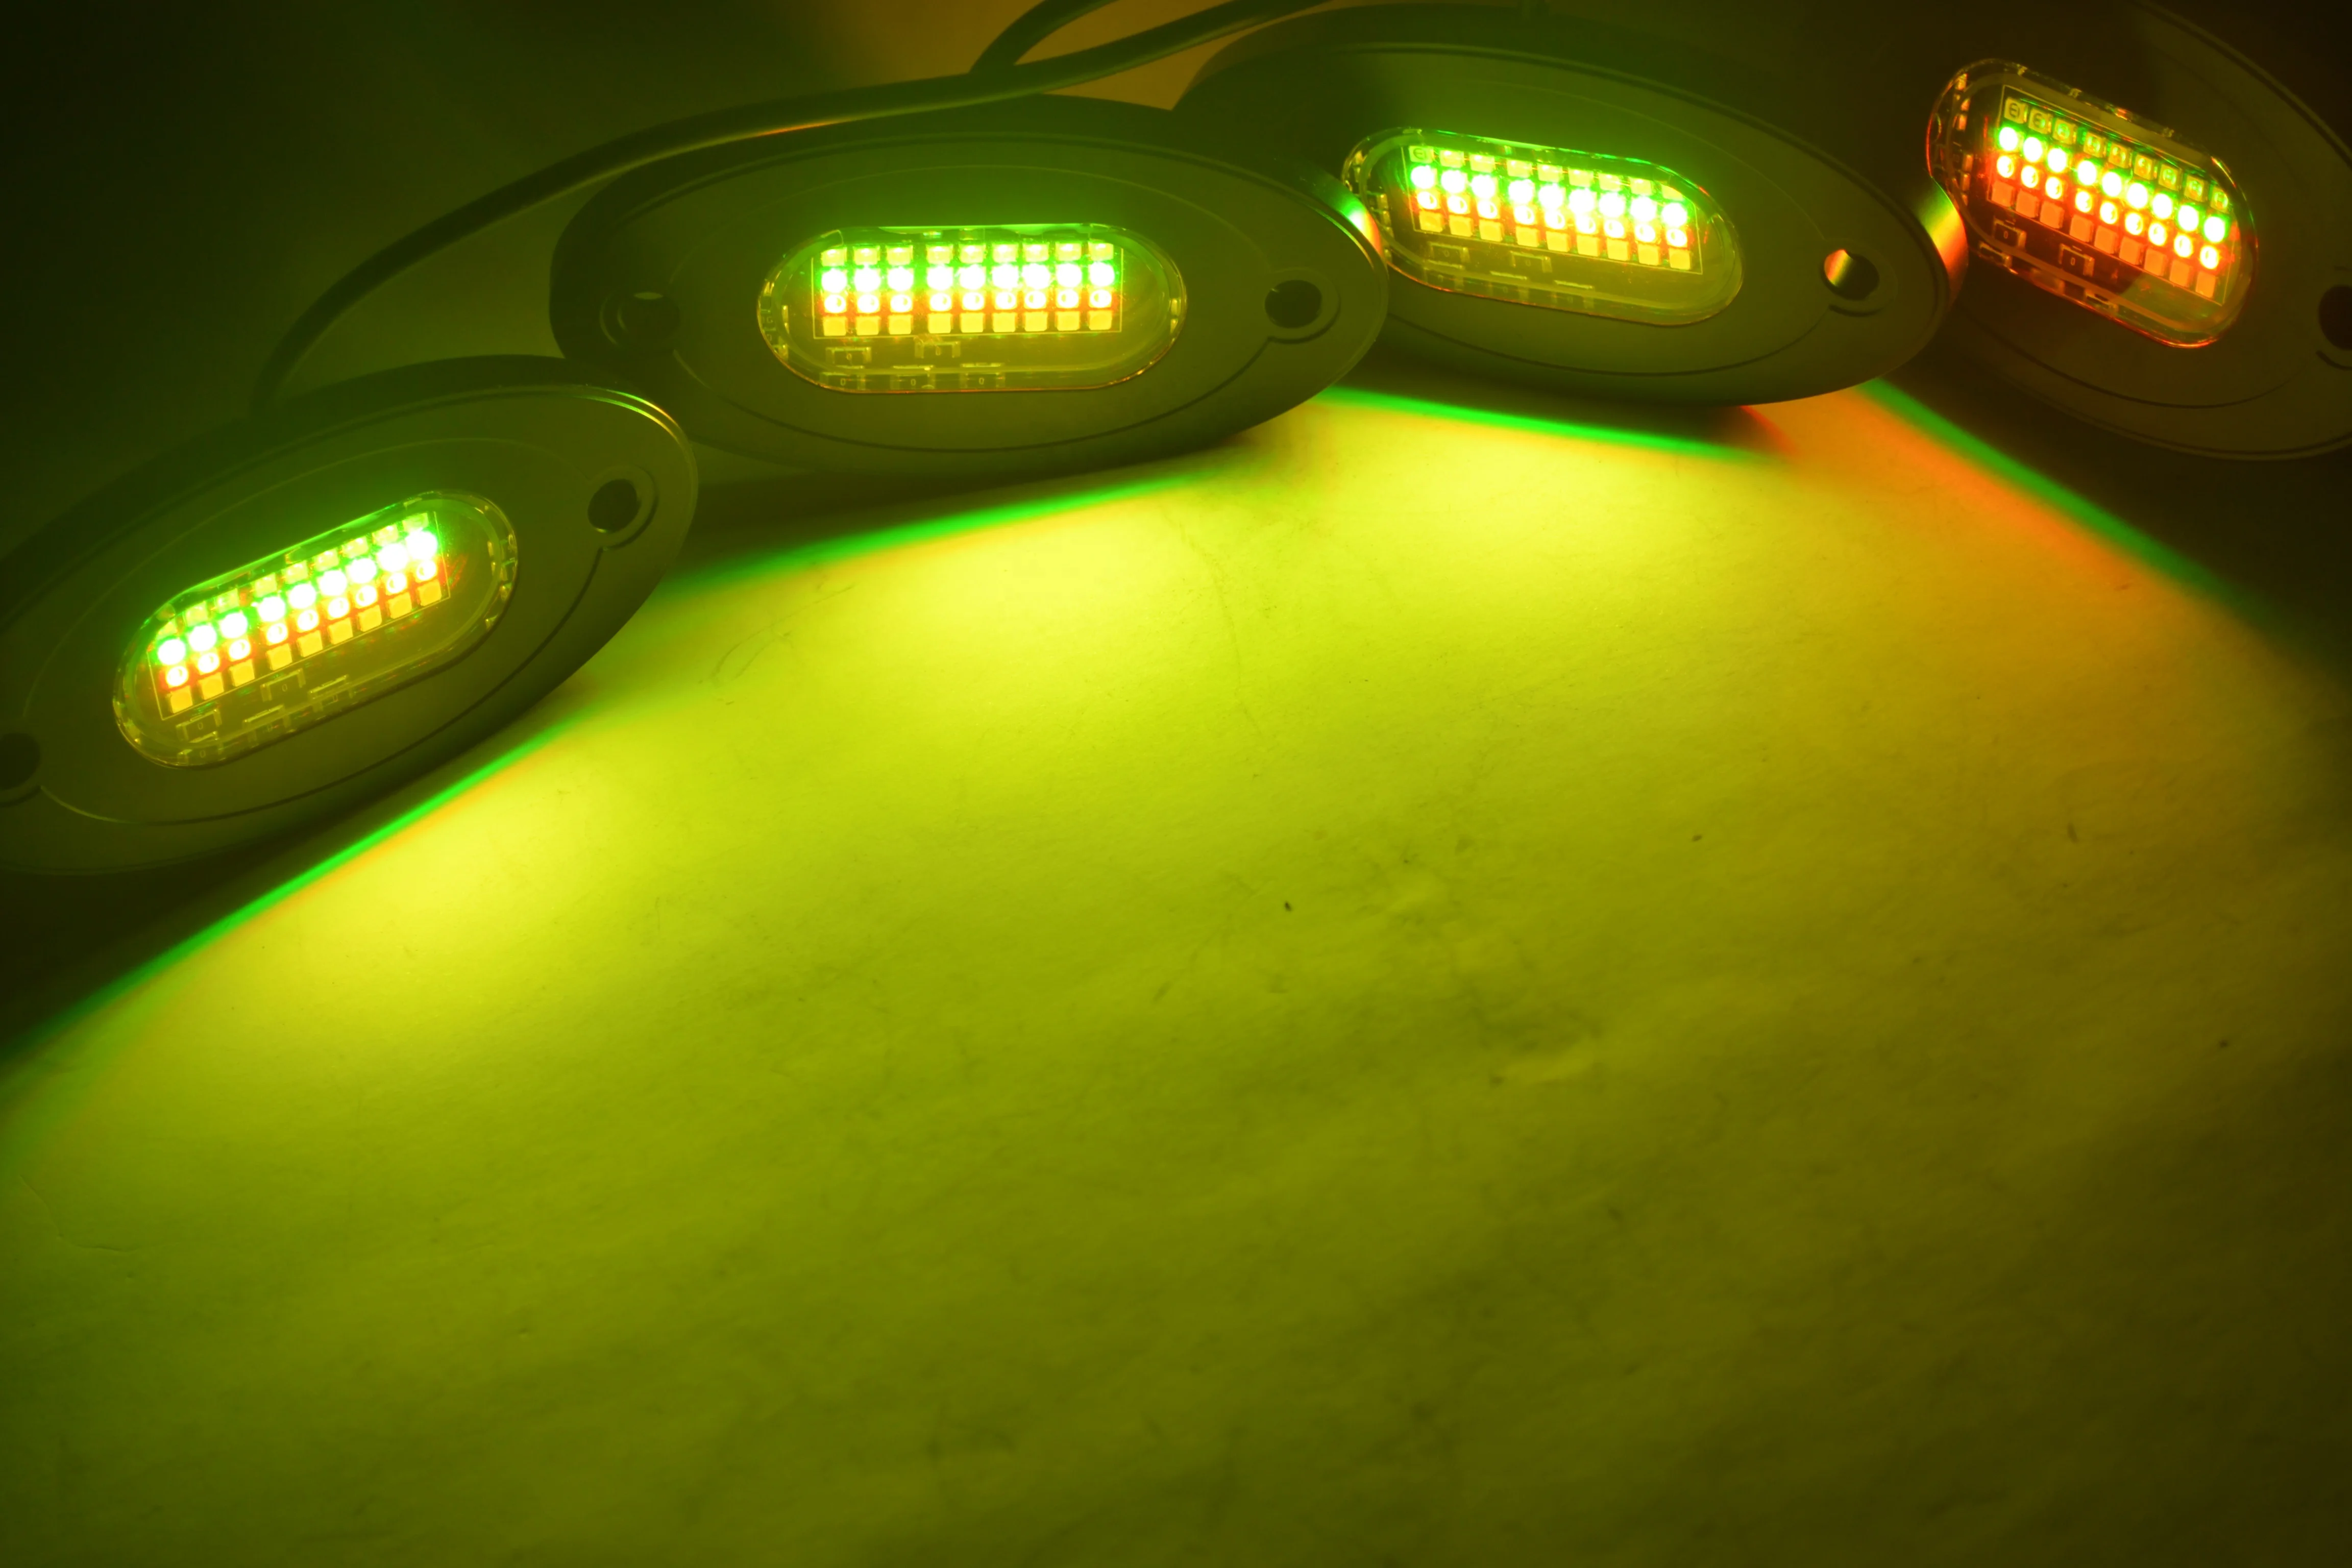 8 Светодиодных рок-светильников Pods RGBW - комплект многоцветного неонового освещения с контроллером Blue-tooth, музыкальный режим